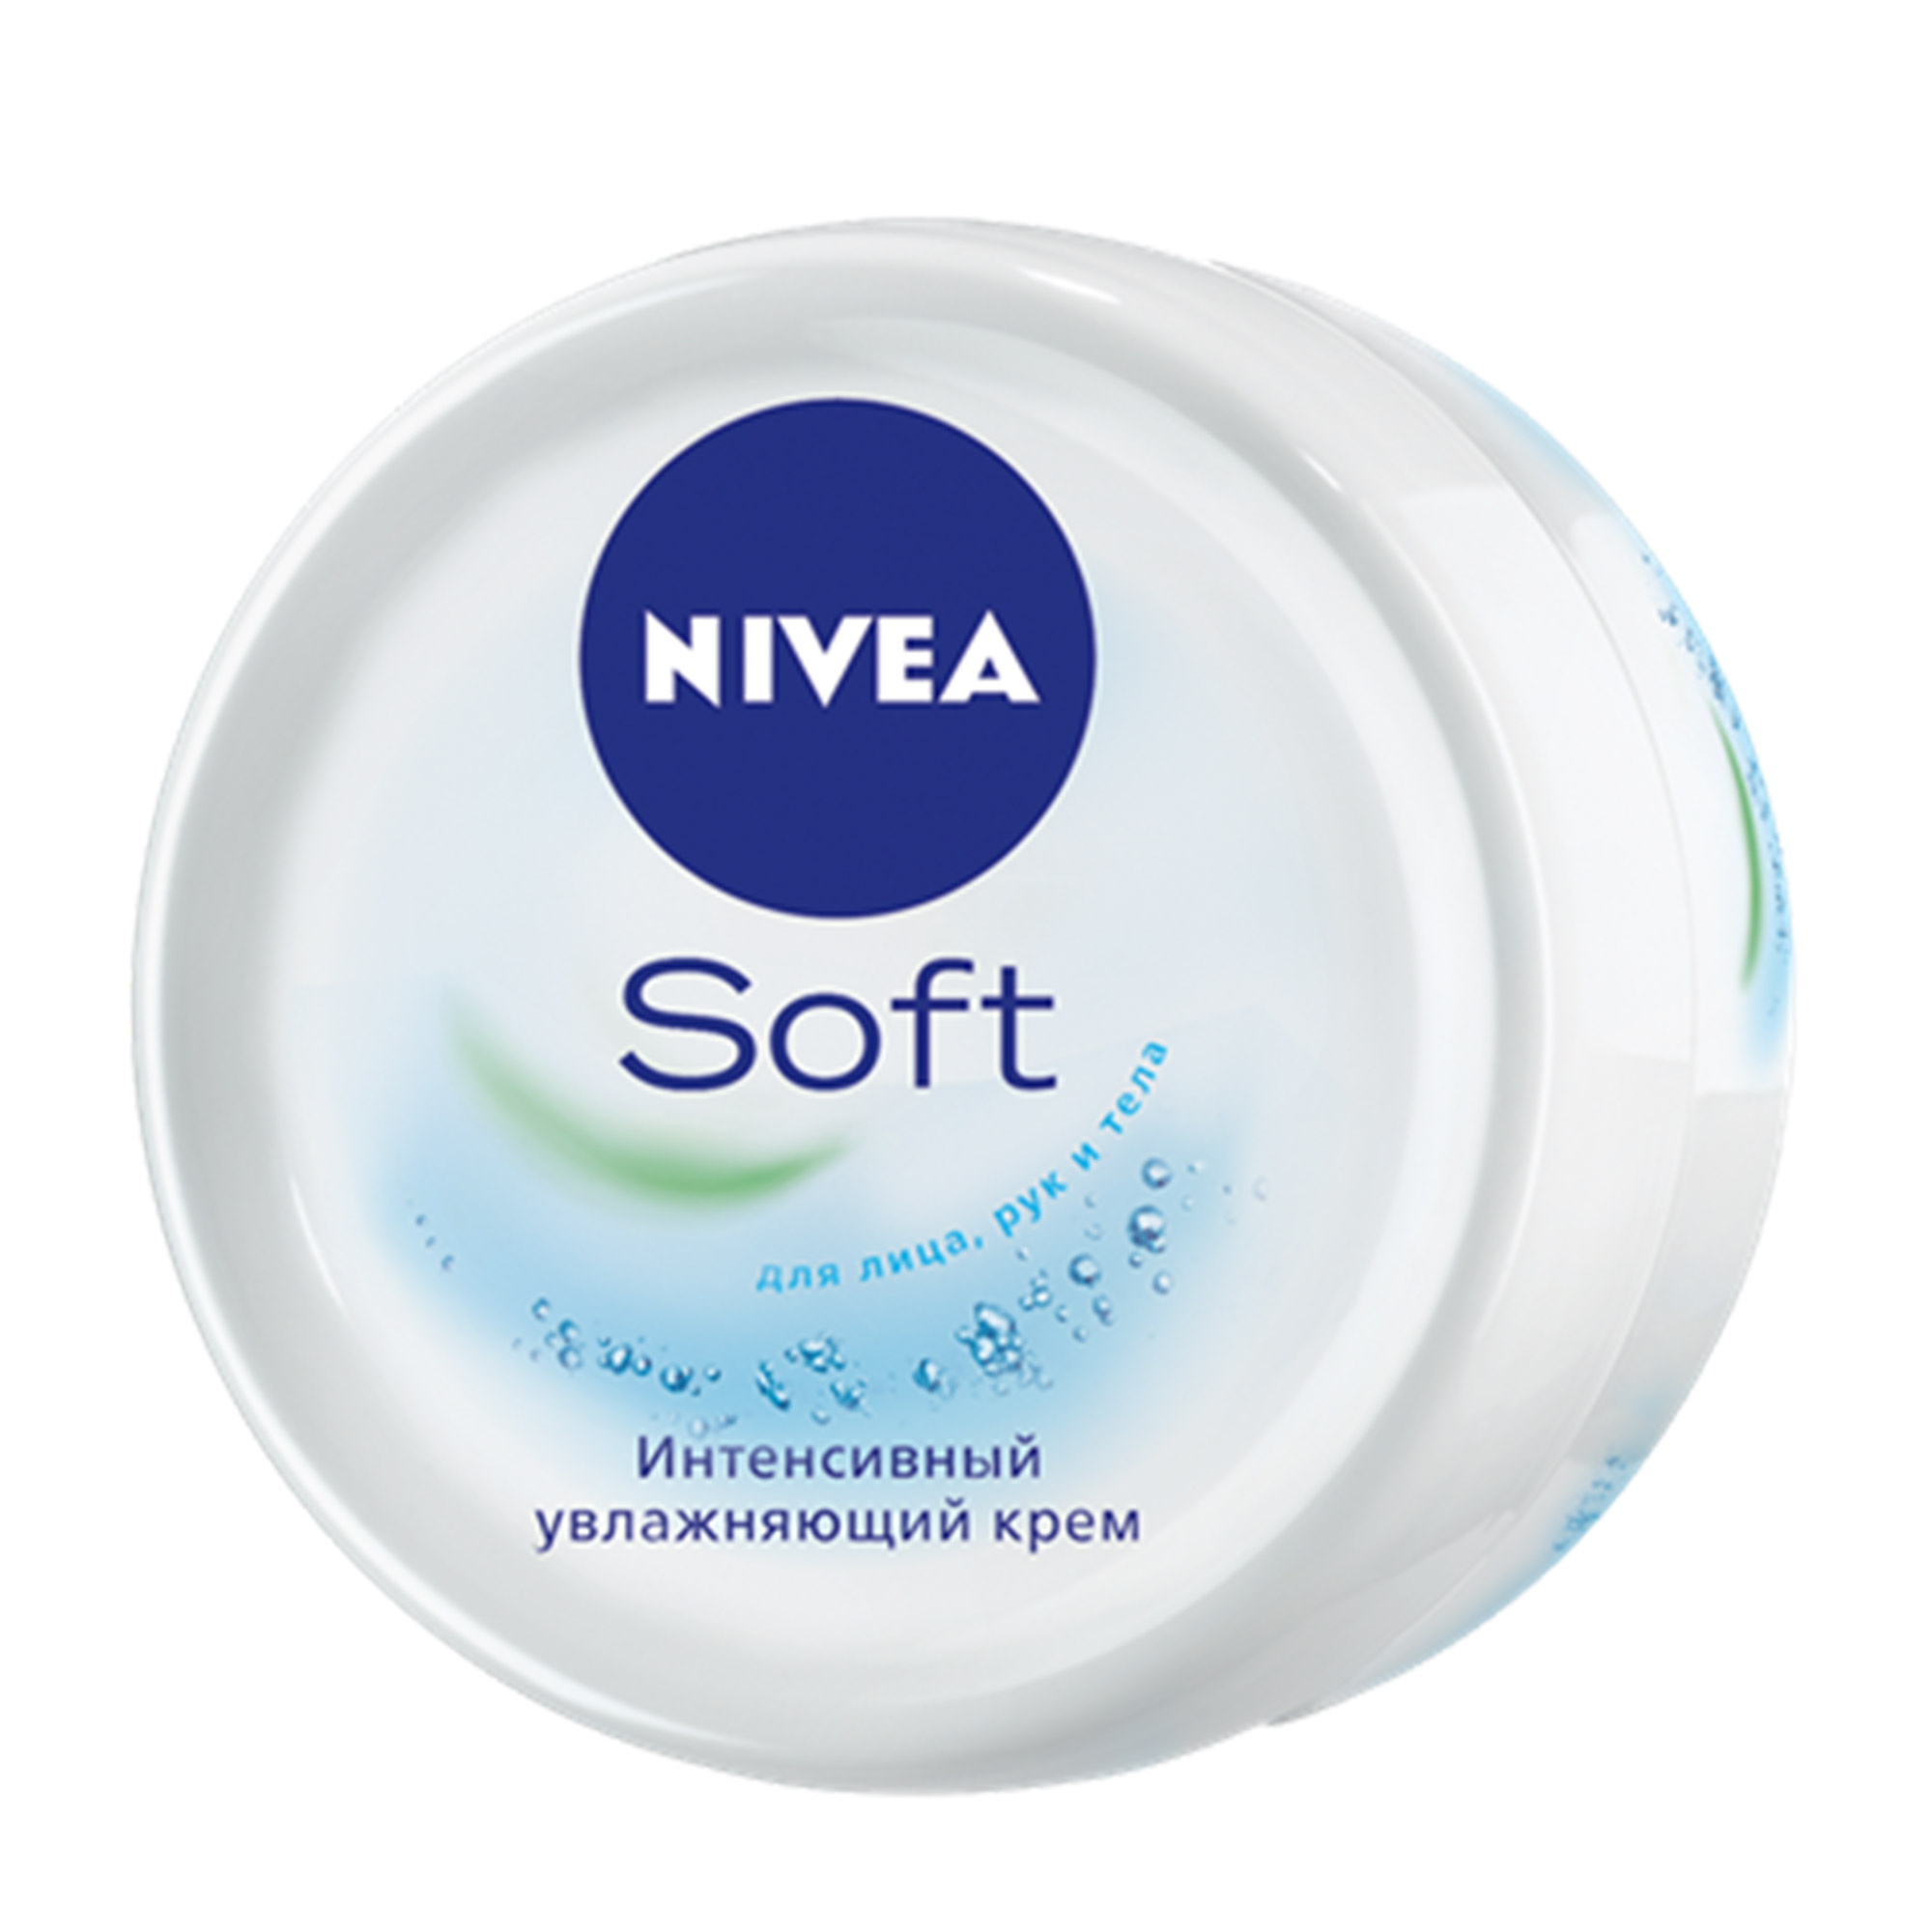 Крем интенсивный увлажняющий Soft 200 мл Nivea крем для лица рук и тела nivea soft с маслом жожоба и витамином е интенсивный увлажняющий 100 мл